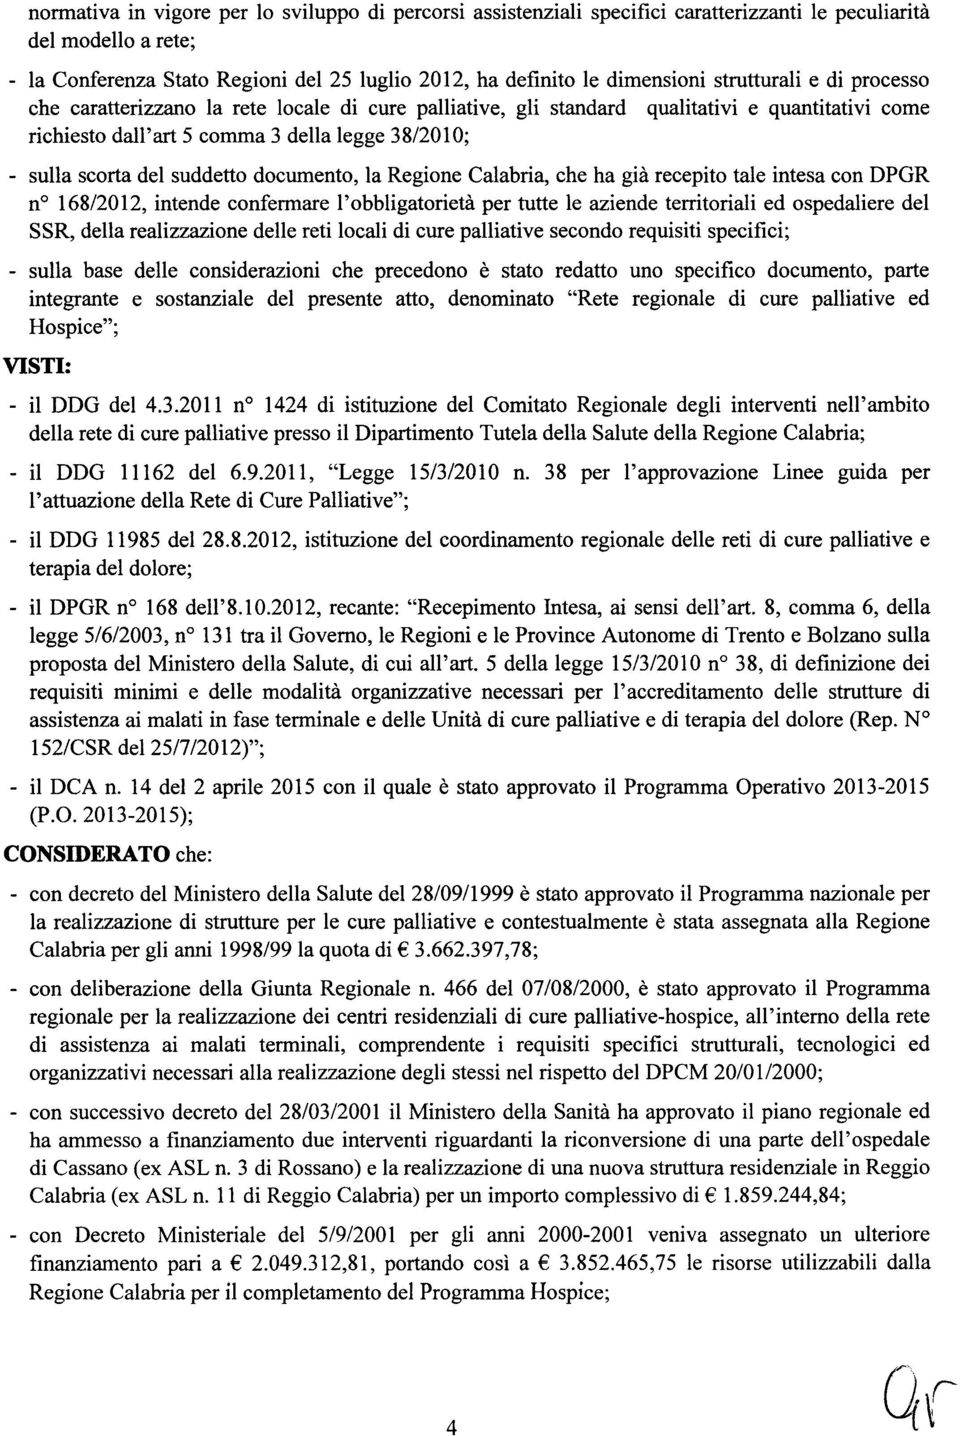 suddetto documento, la Regione Calabria, che ha già recepito tale intesa con DPGR no 168/2012, intende confermare l'obbligatorietà per tutte le aziende territoriali ed ospedaliere del SSR, della